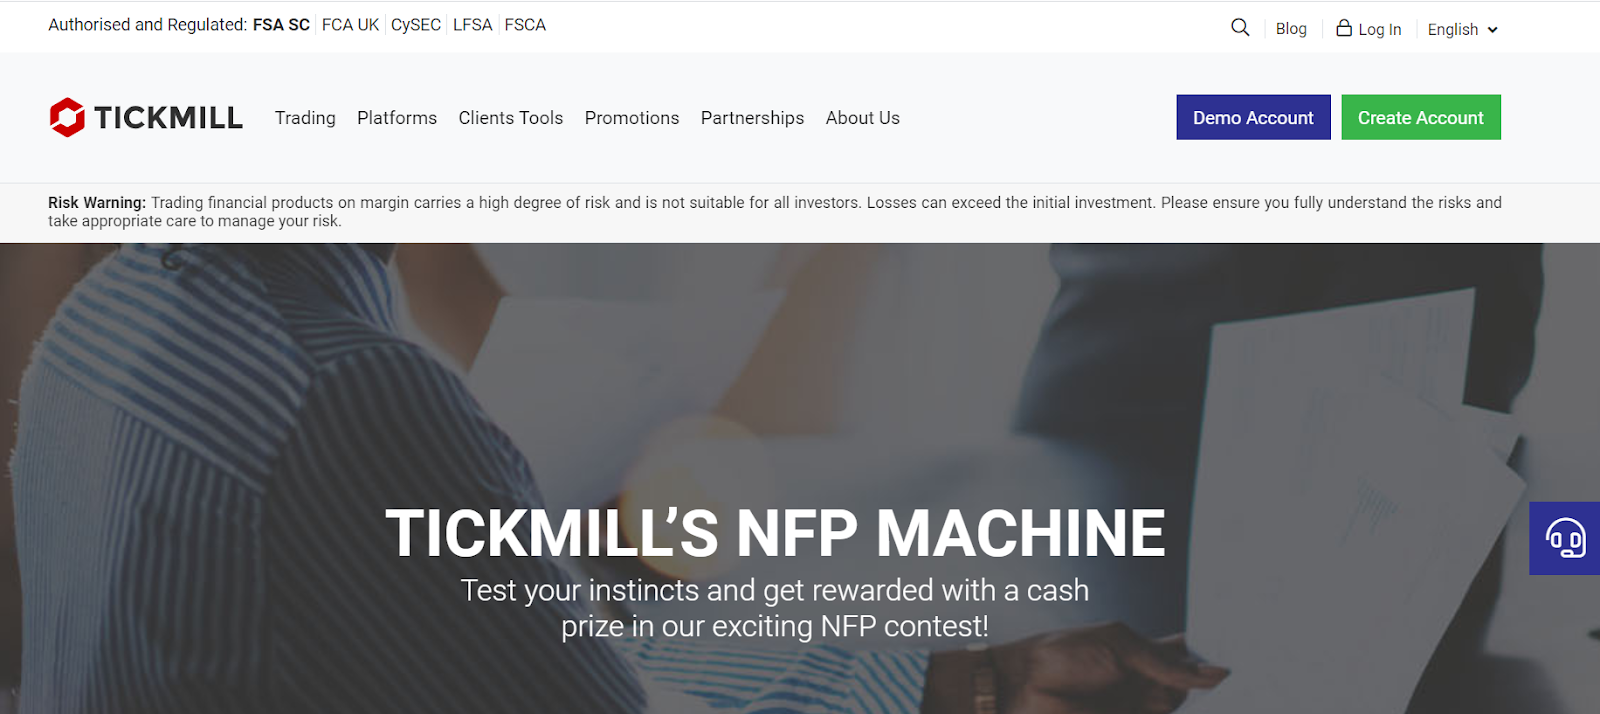 مكافآت من Tickmill -   NFP Machine